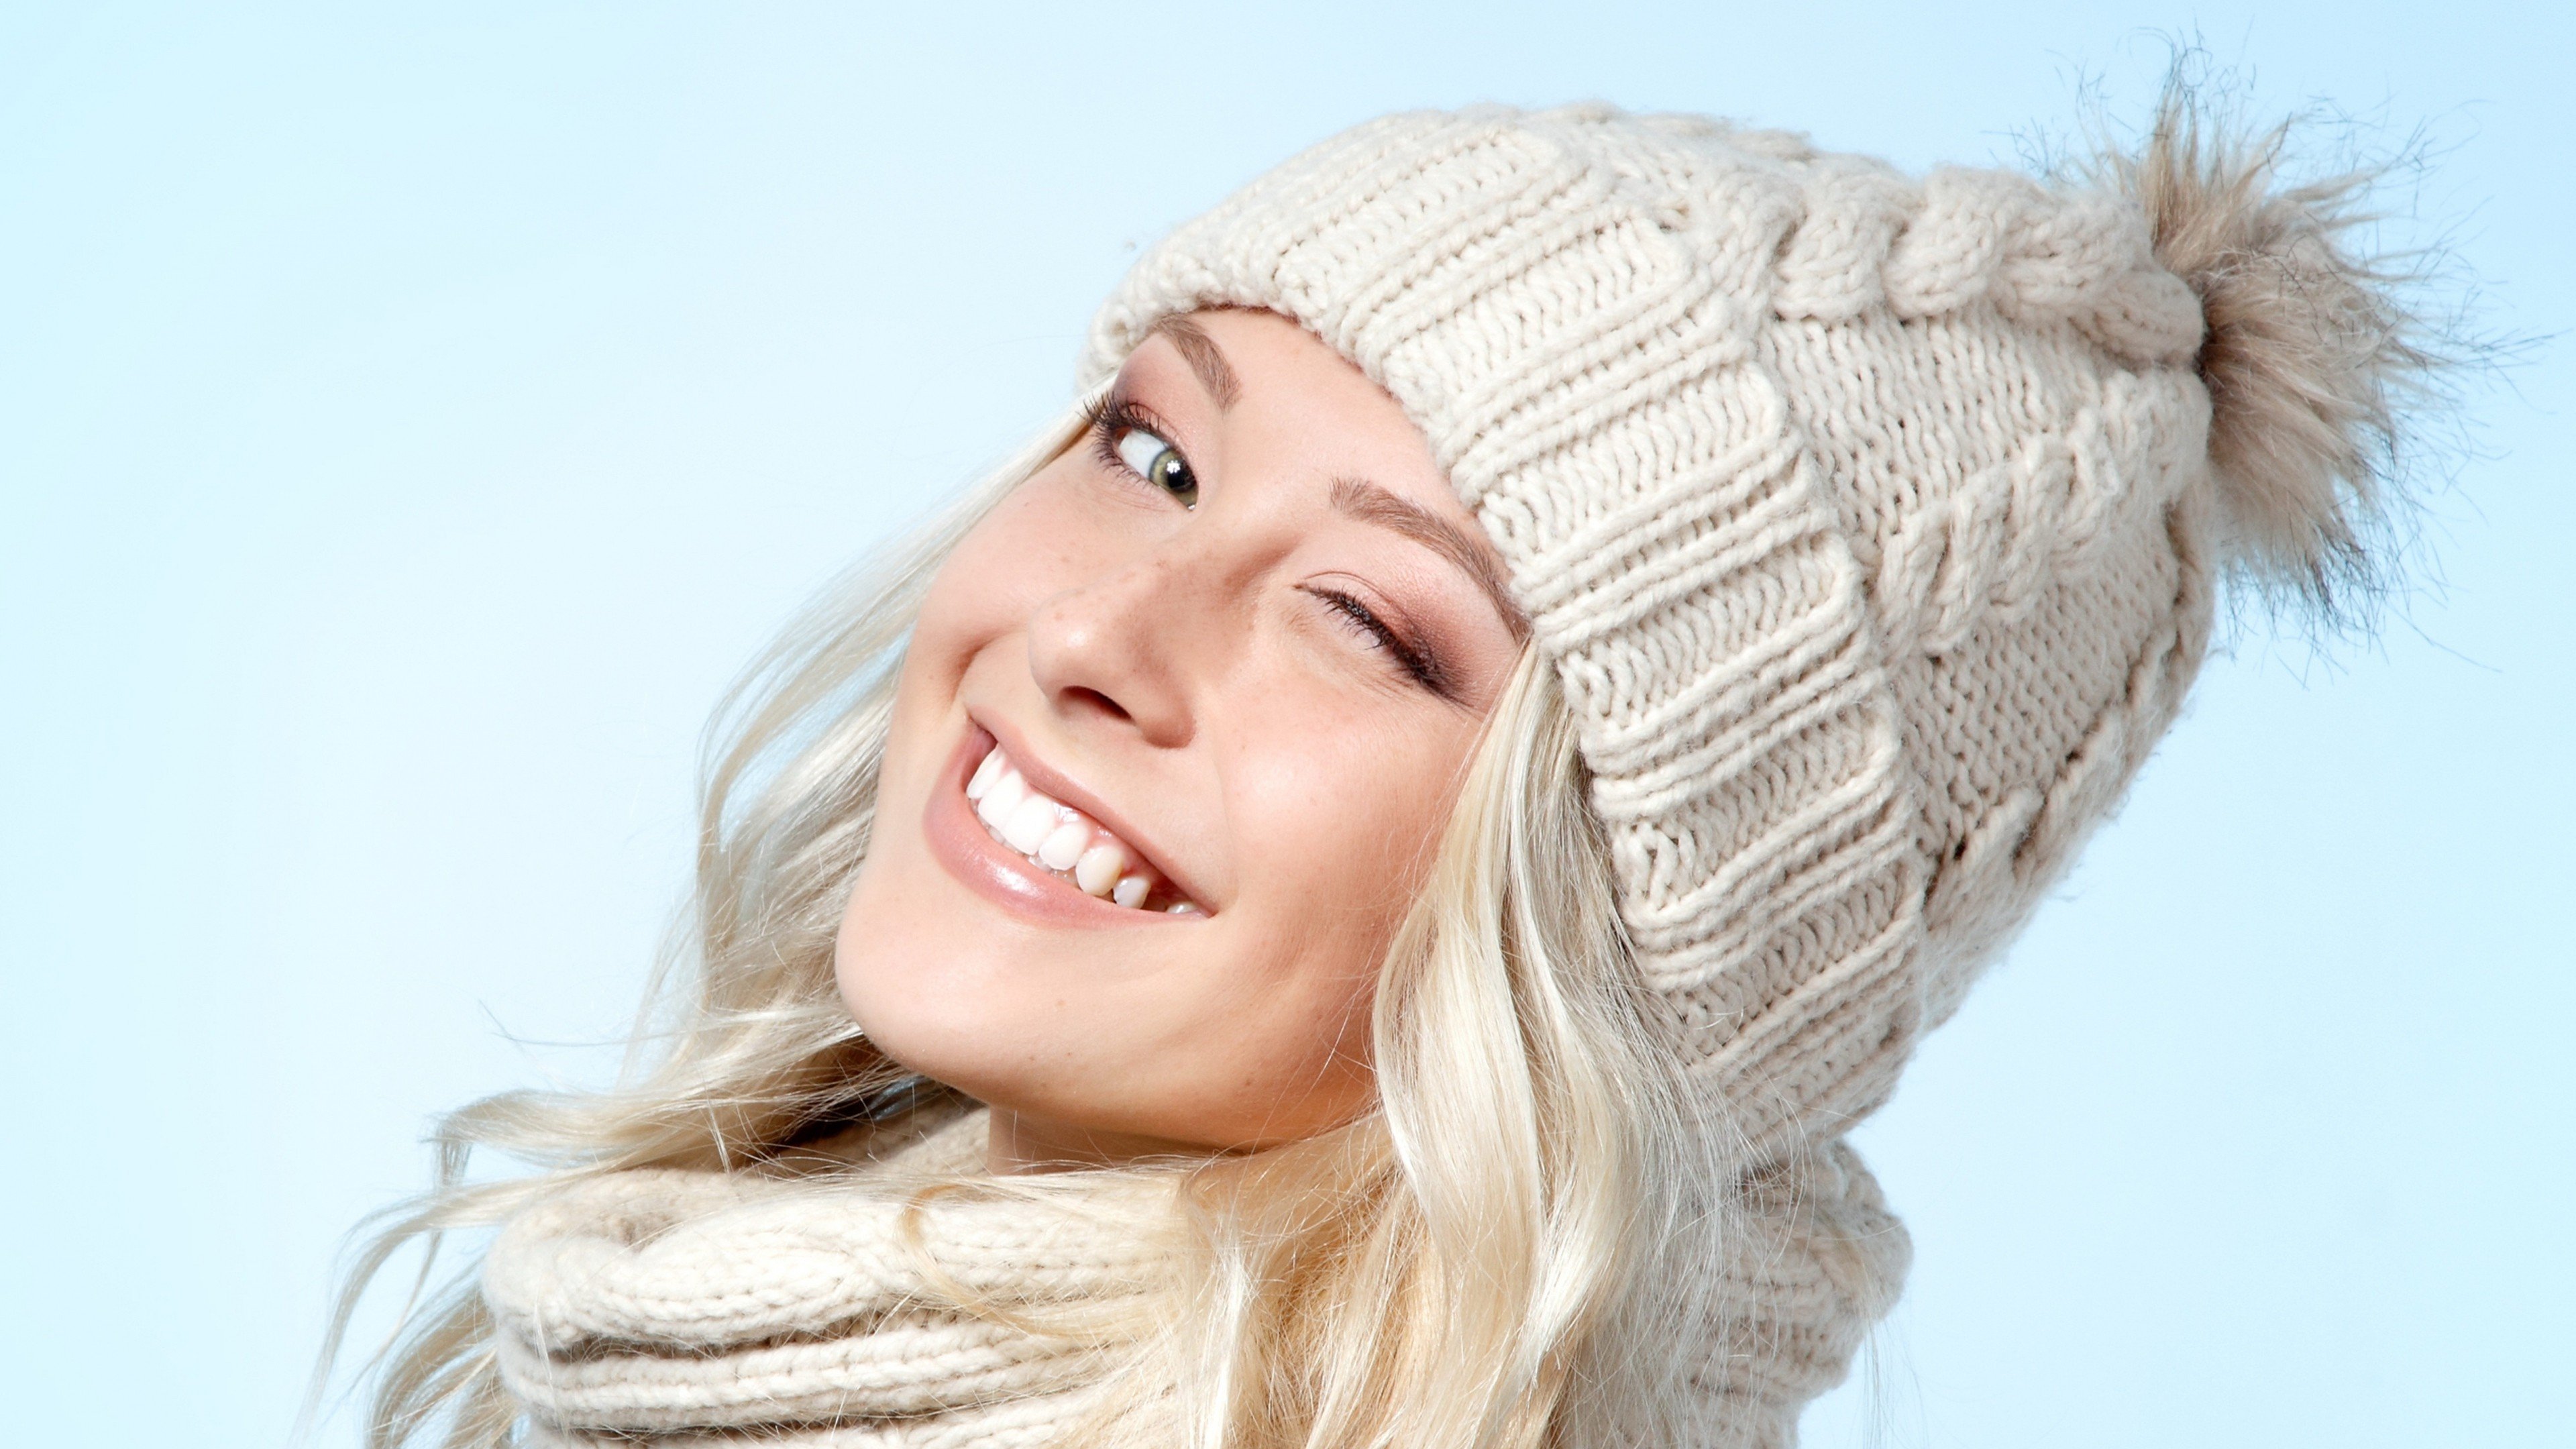 women, Woolly hat, Winking, Smiling Wallpaper